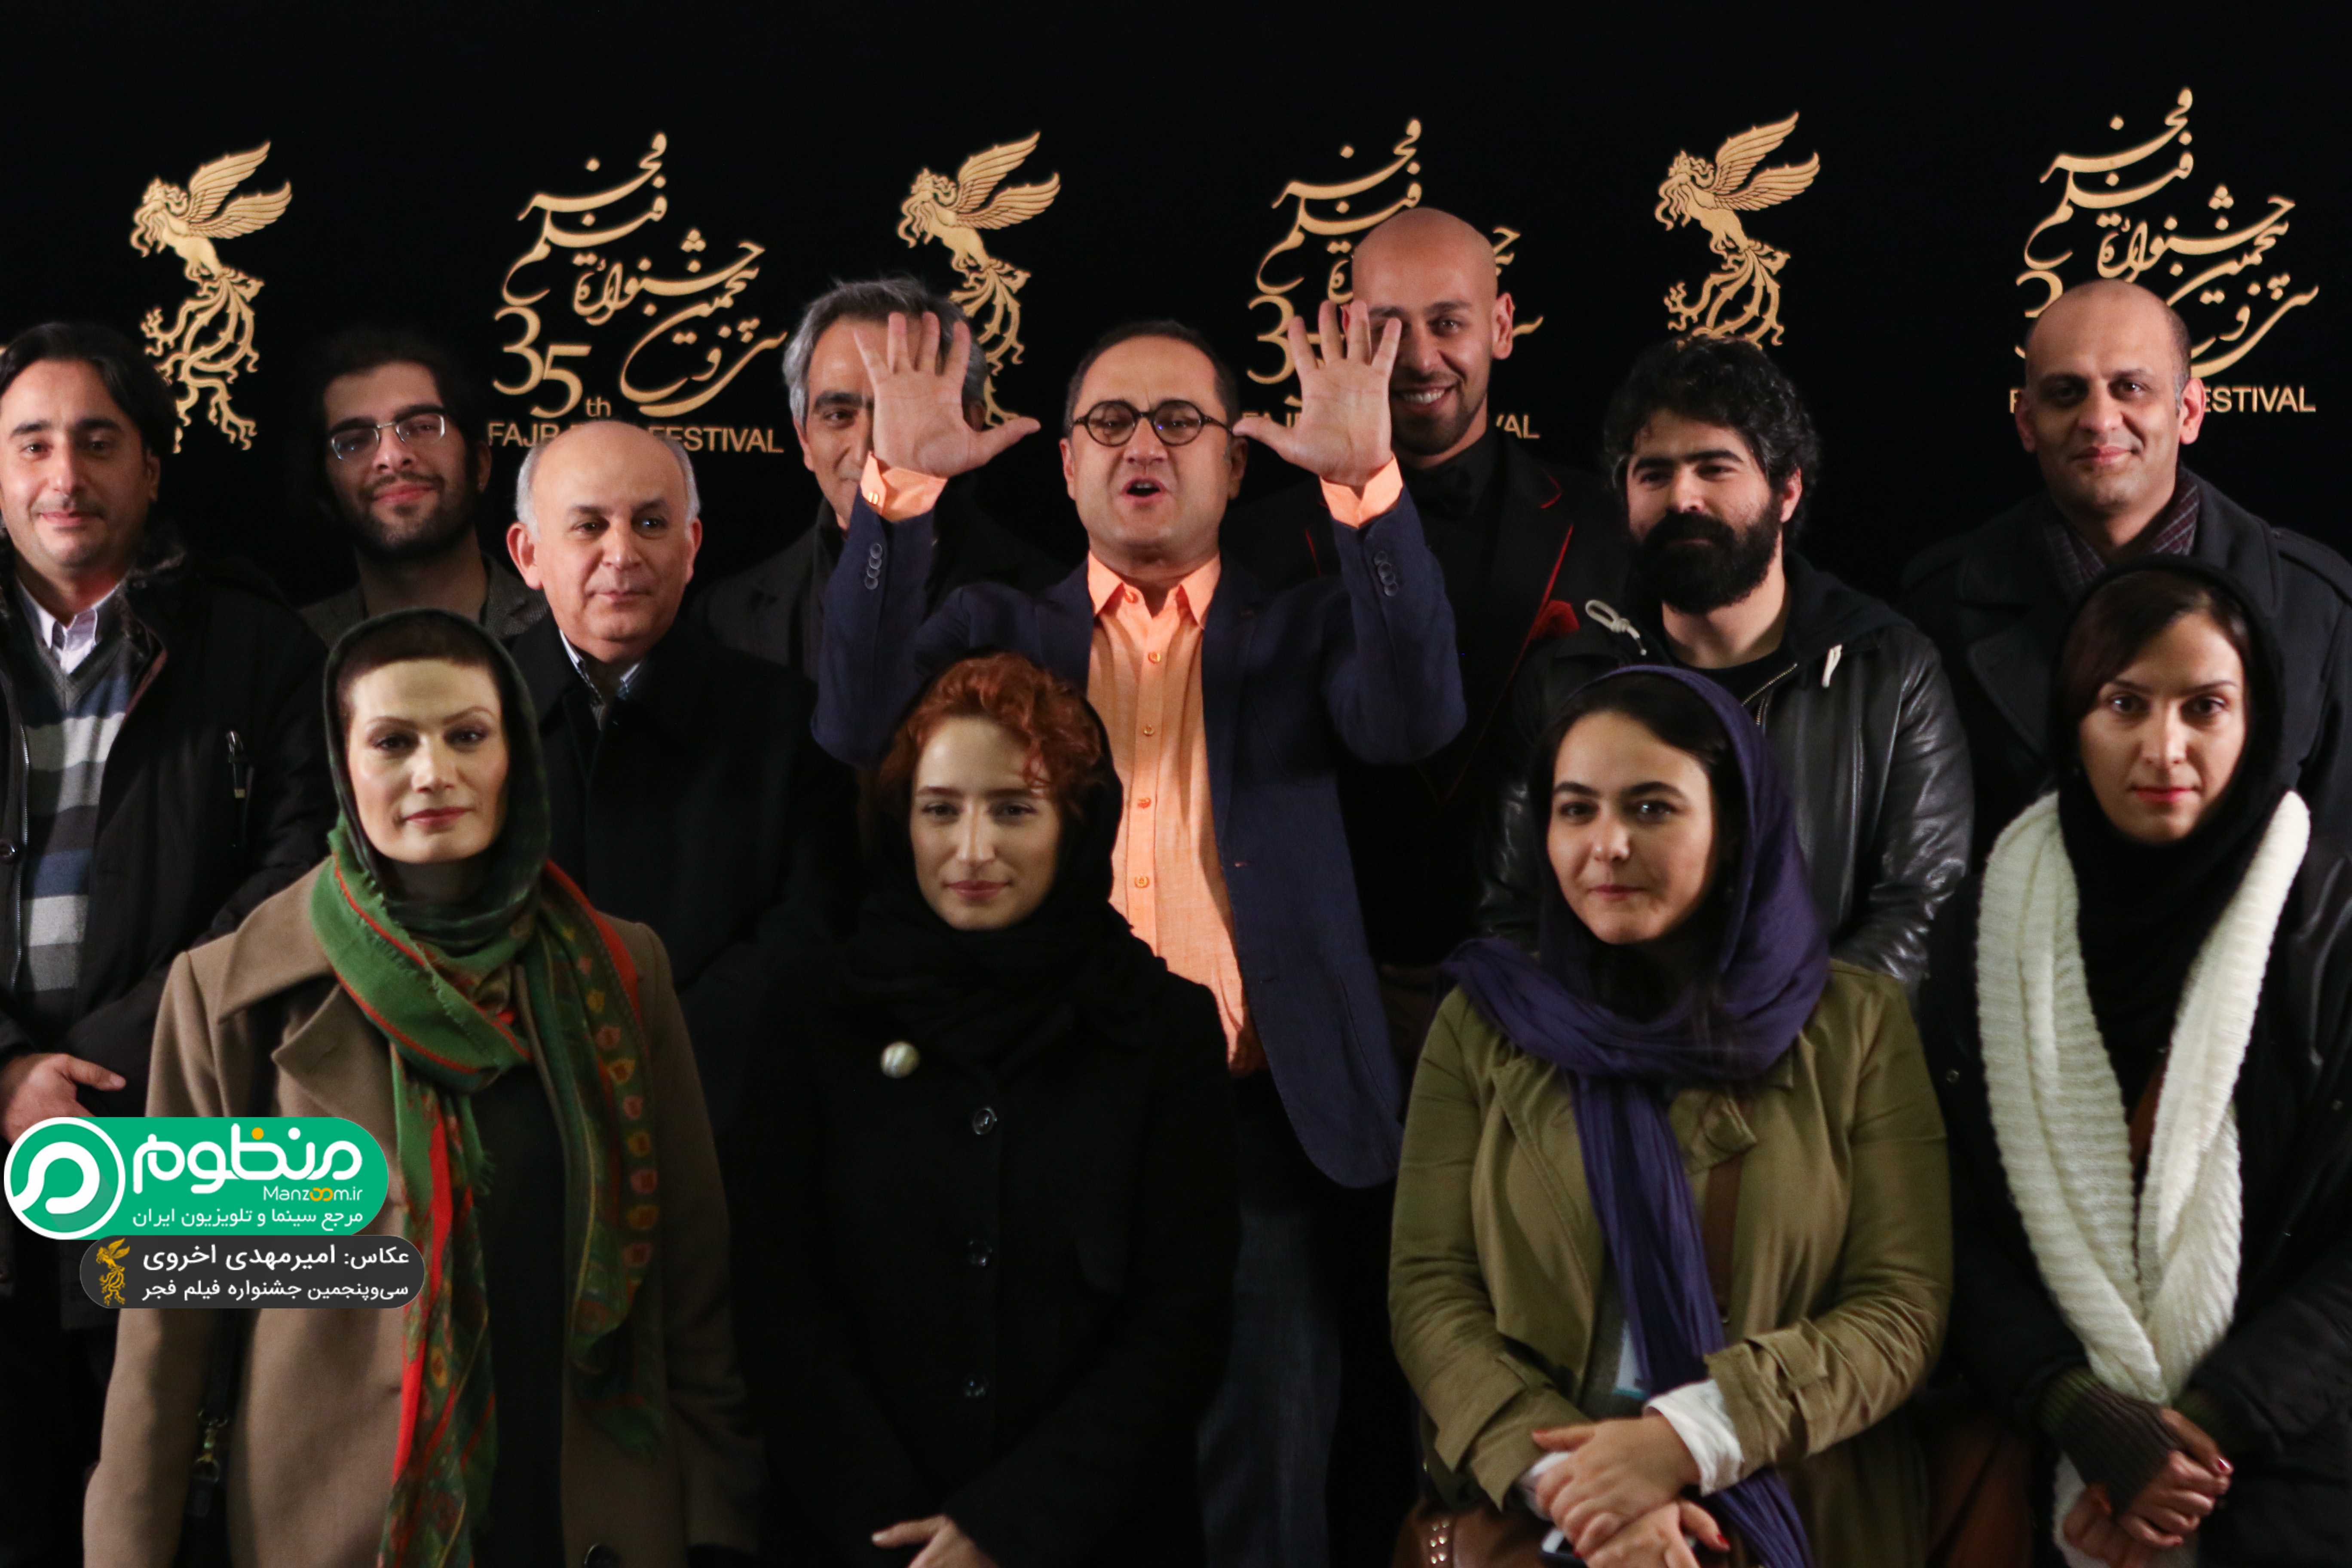 بهرام بدخشانی در اکران افتتاحیه فیلم سینمایی نگار به همراه نگار جواهریان و رامبد جوان